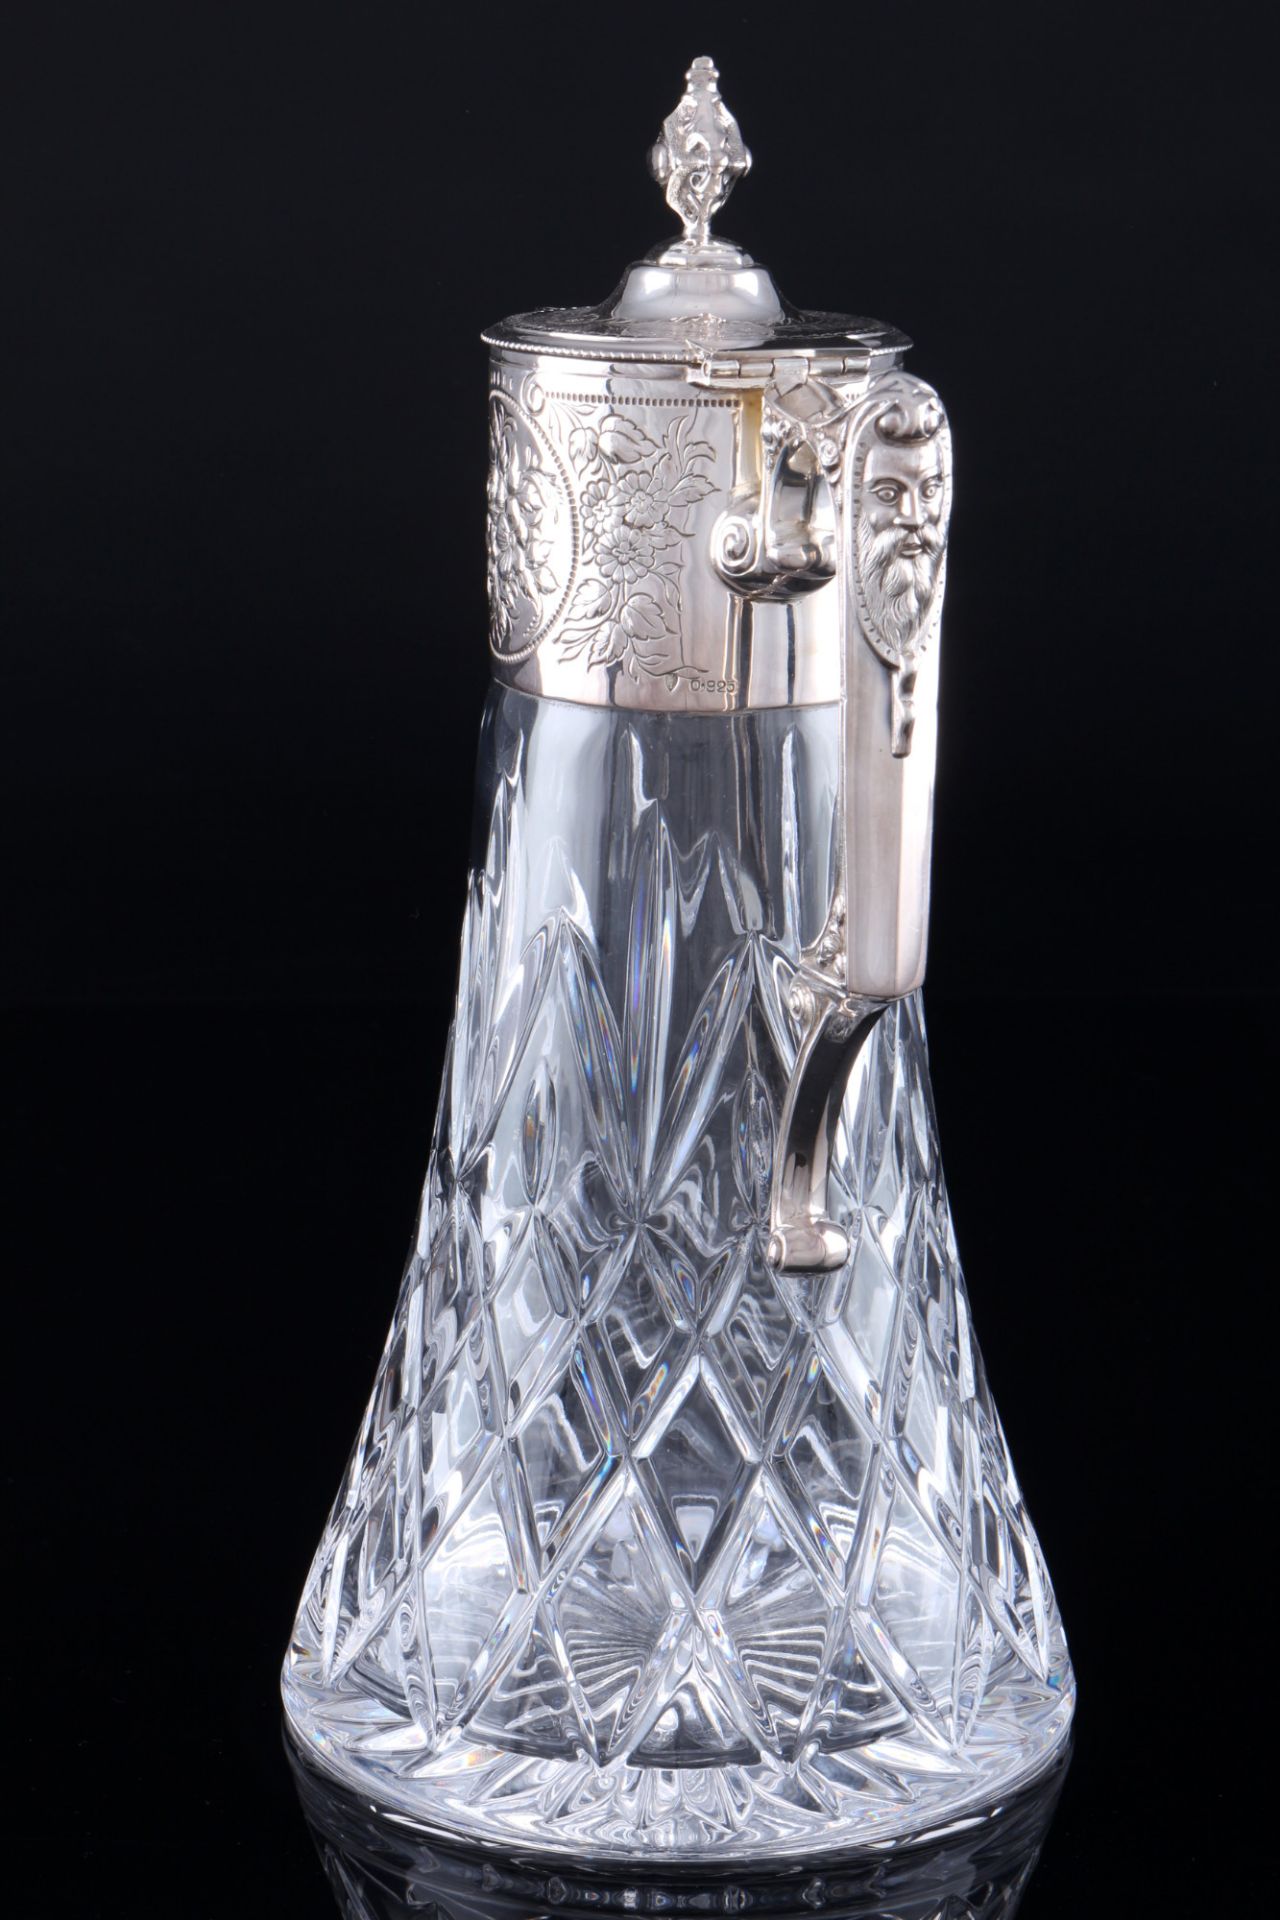 925 sterling silver crystal carafe with flower engraving, Silber Kristallkaraffe mit Jugendstildekor - Image 2 of 4